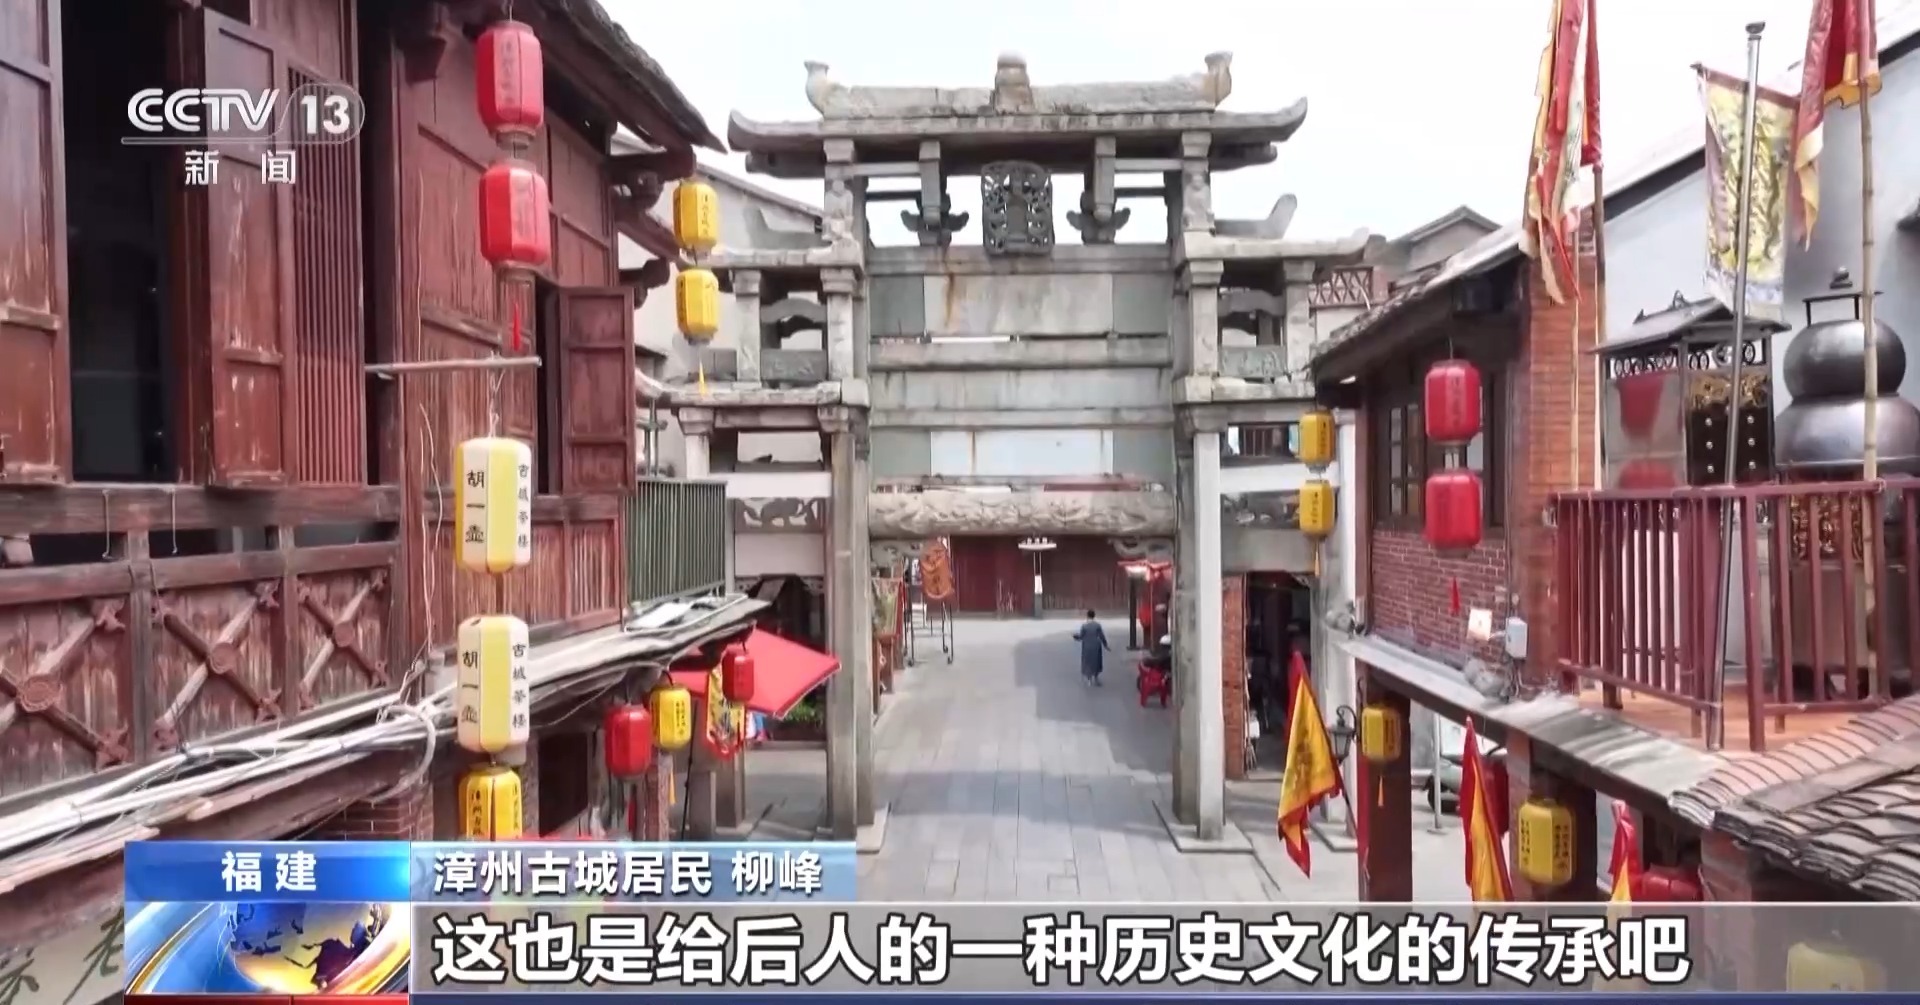 文化中国行丨点亮“闽南红” 在这座千年古城里见人、见物、见生活